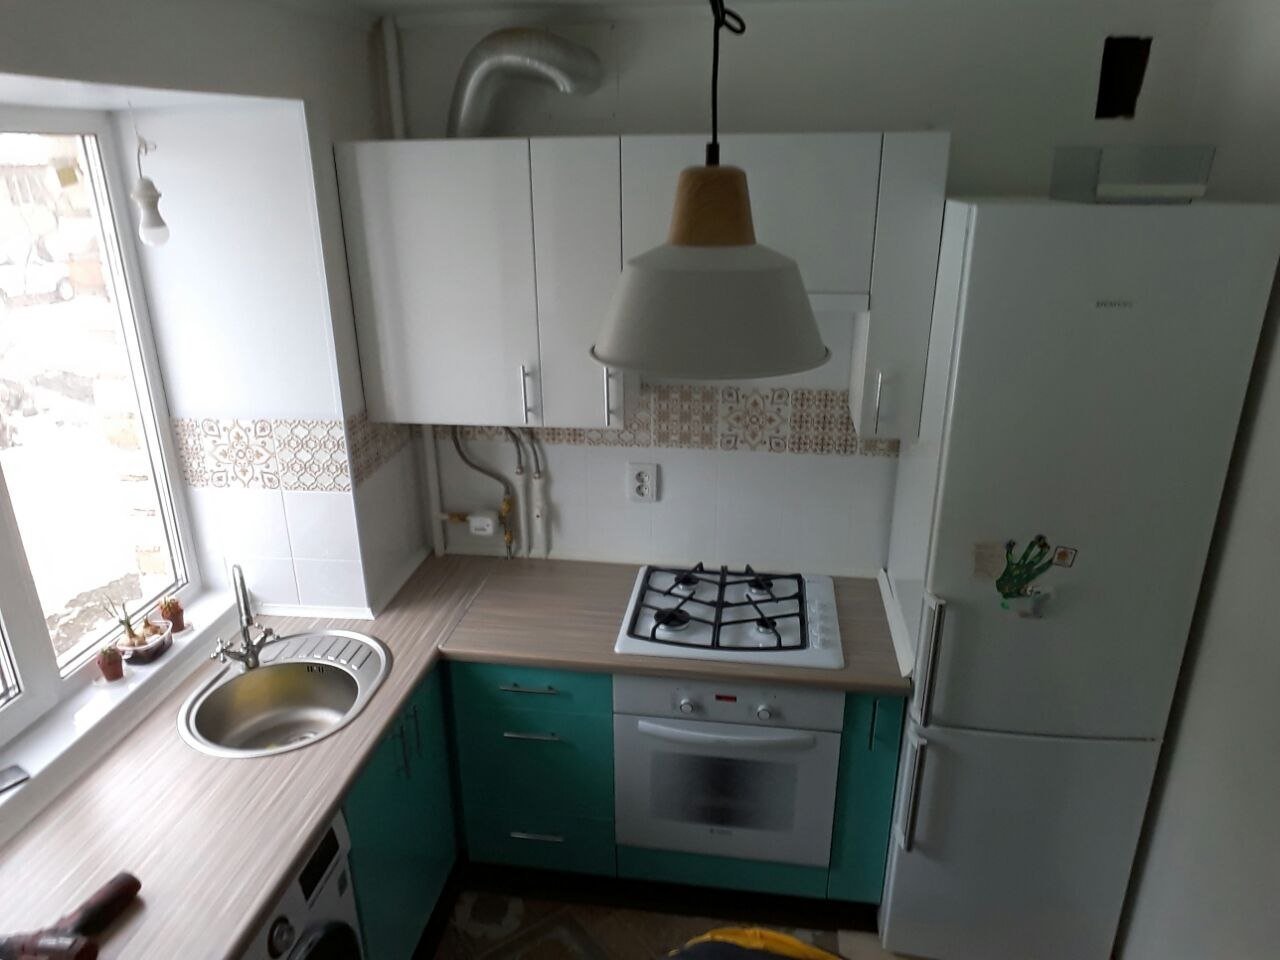 Как обустроить маленькую кухню в квартире 6 кв м с газовой плитой и холодильником фото